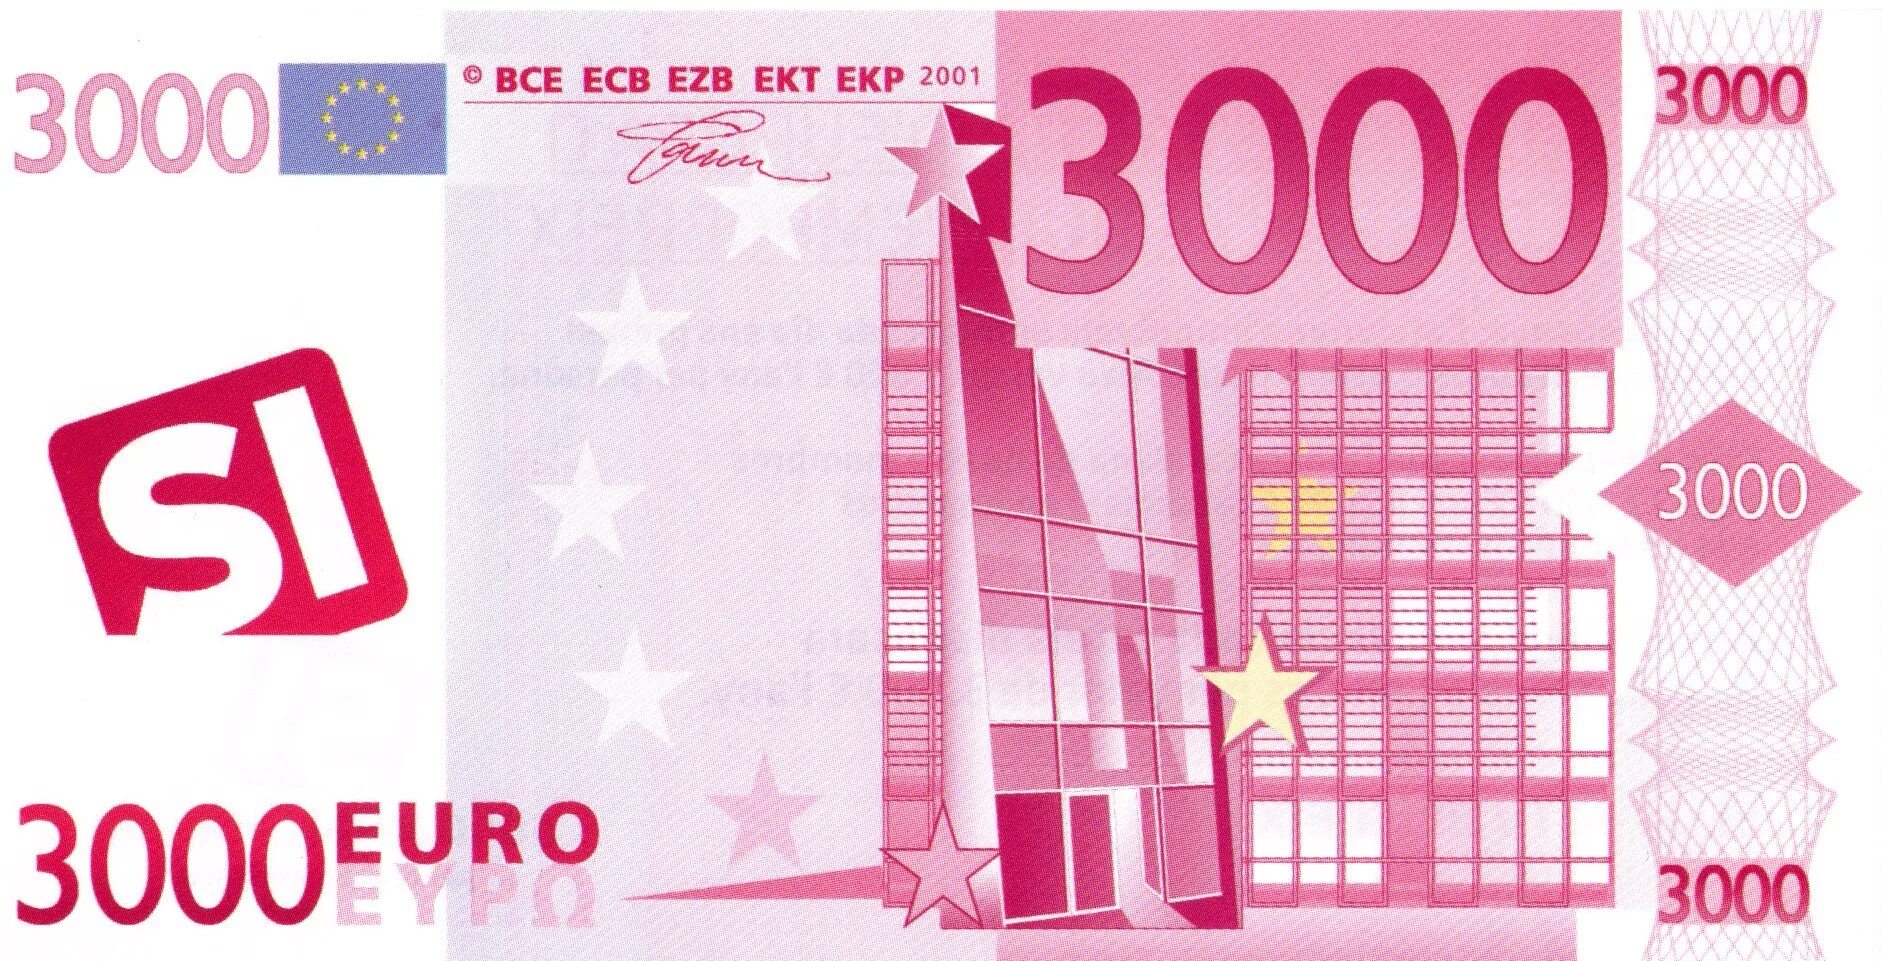 2000 Евро купюра. Деньги евро. 1000 Евро купюра. Изображение евро купюр. Самые крупные евро